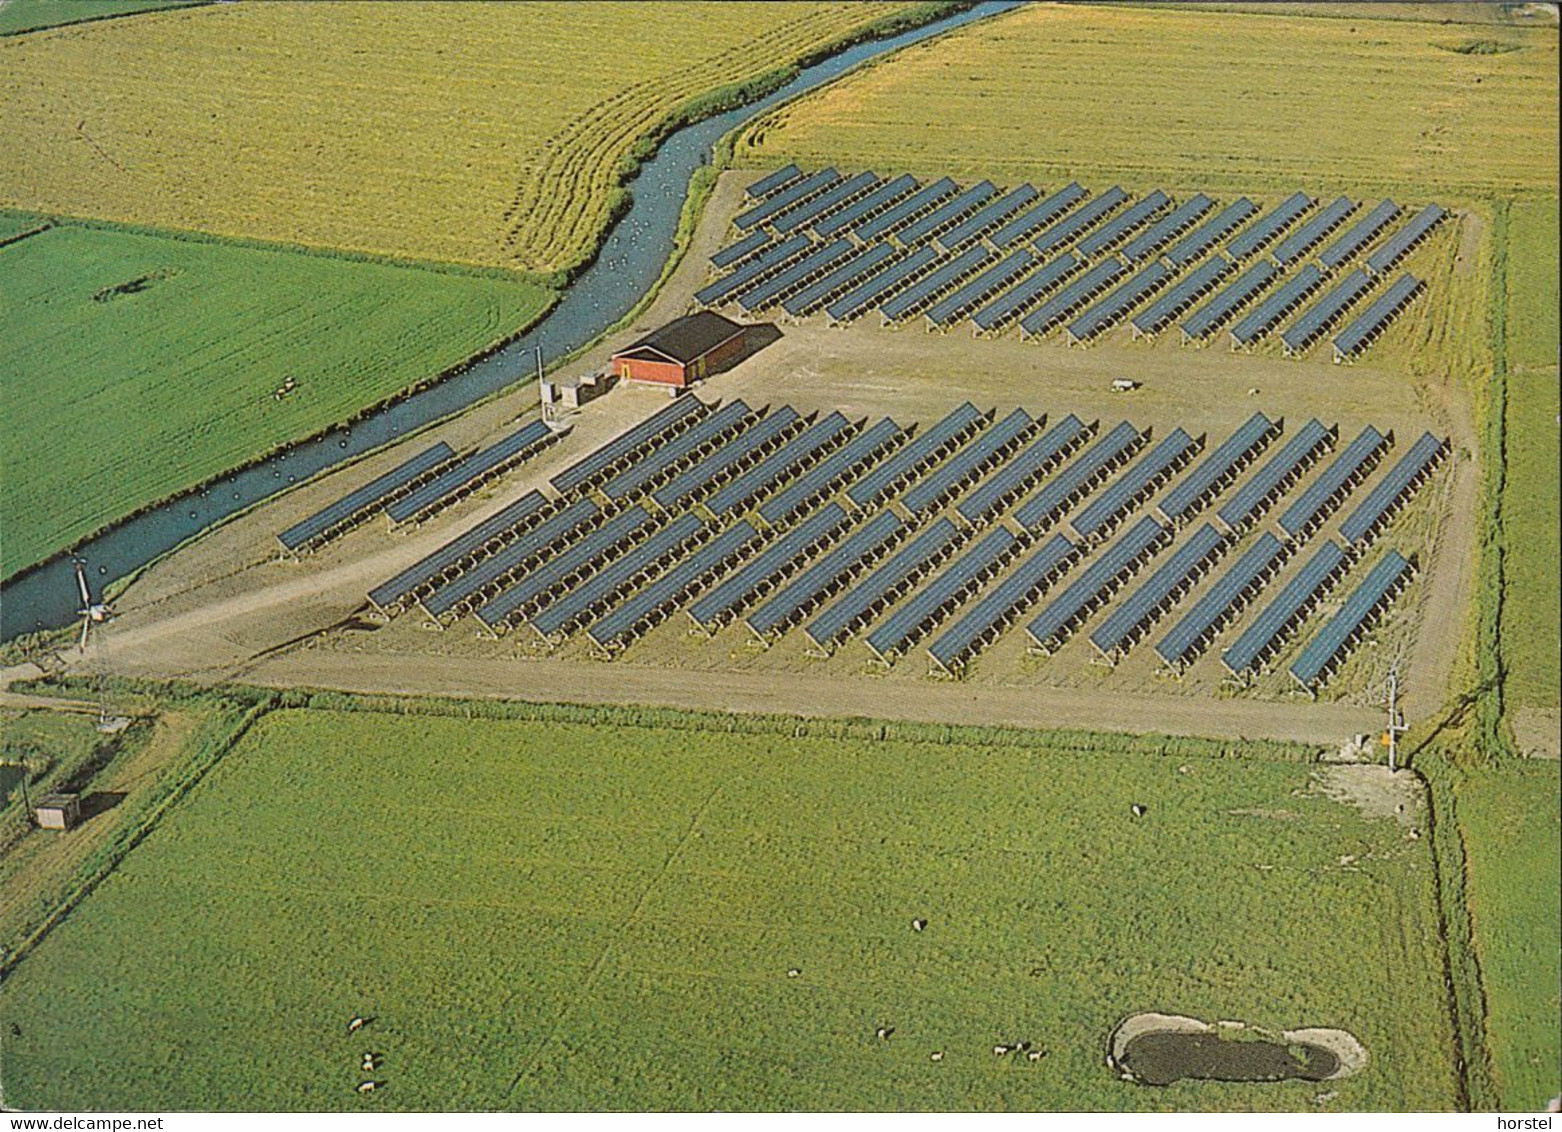 D-25849 Pellworm - Solaranlage - Solarkraftwerk 300KW - Luftbild - Aerial View - Nice Stamp - Halligen